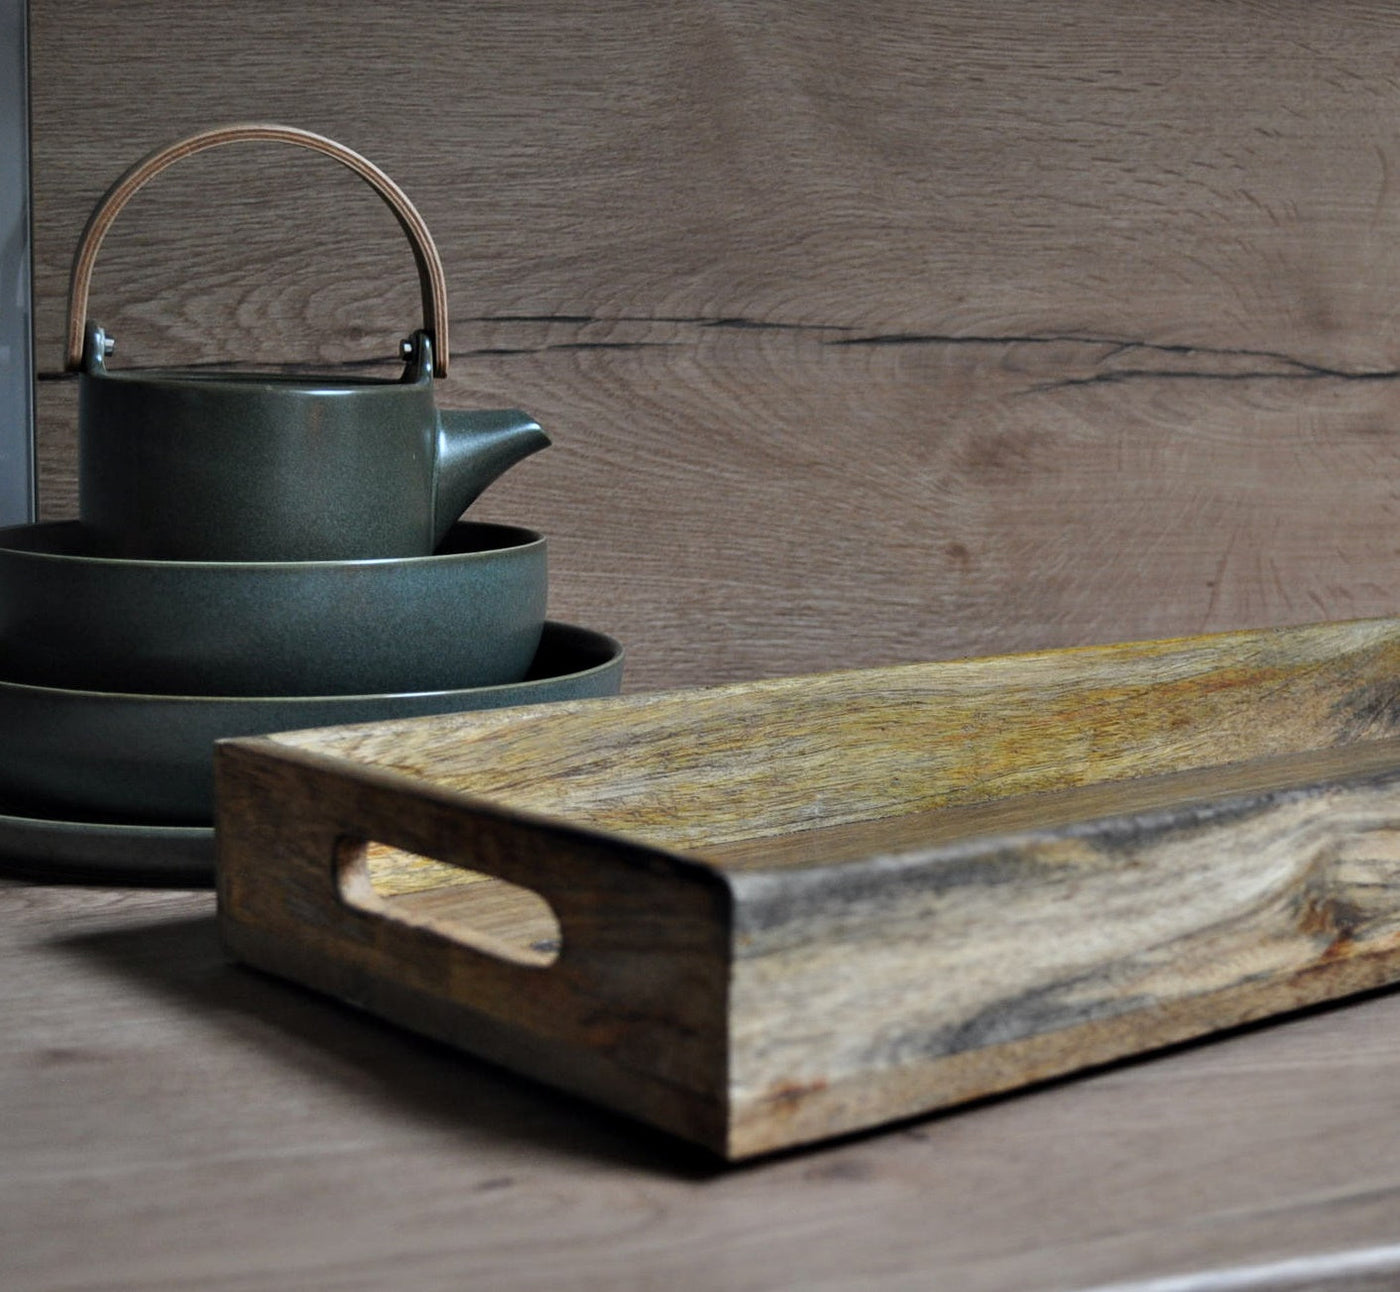 Küchen-Tablett / Serviertablett  aus Holz mit MEER ZEIT Branding 50x20 / 43x27,5 cm Schöne Deko